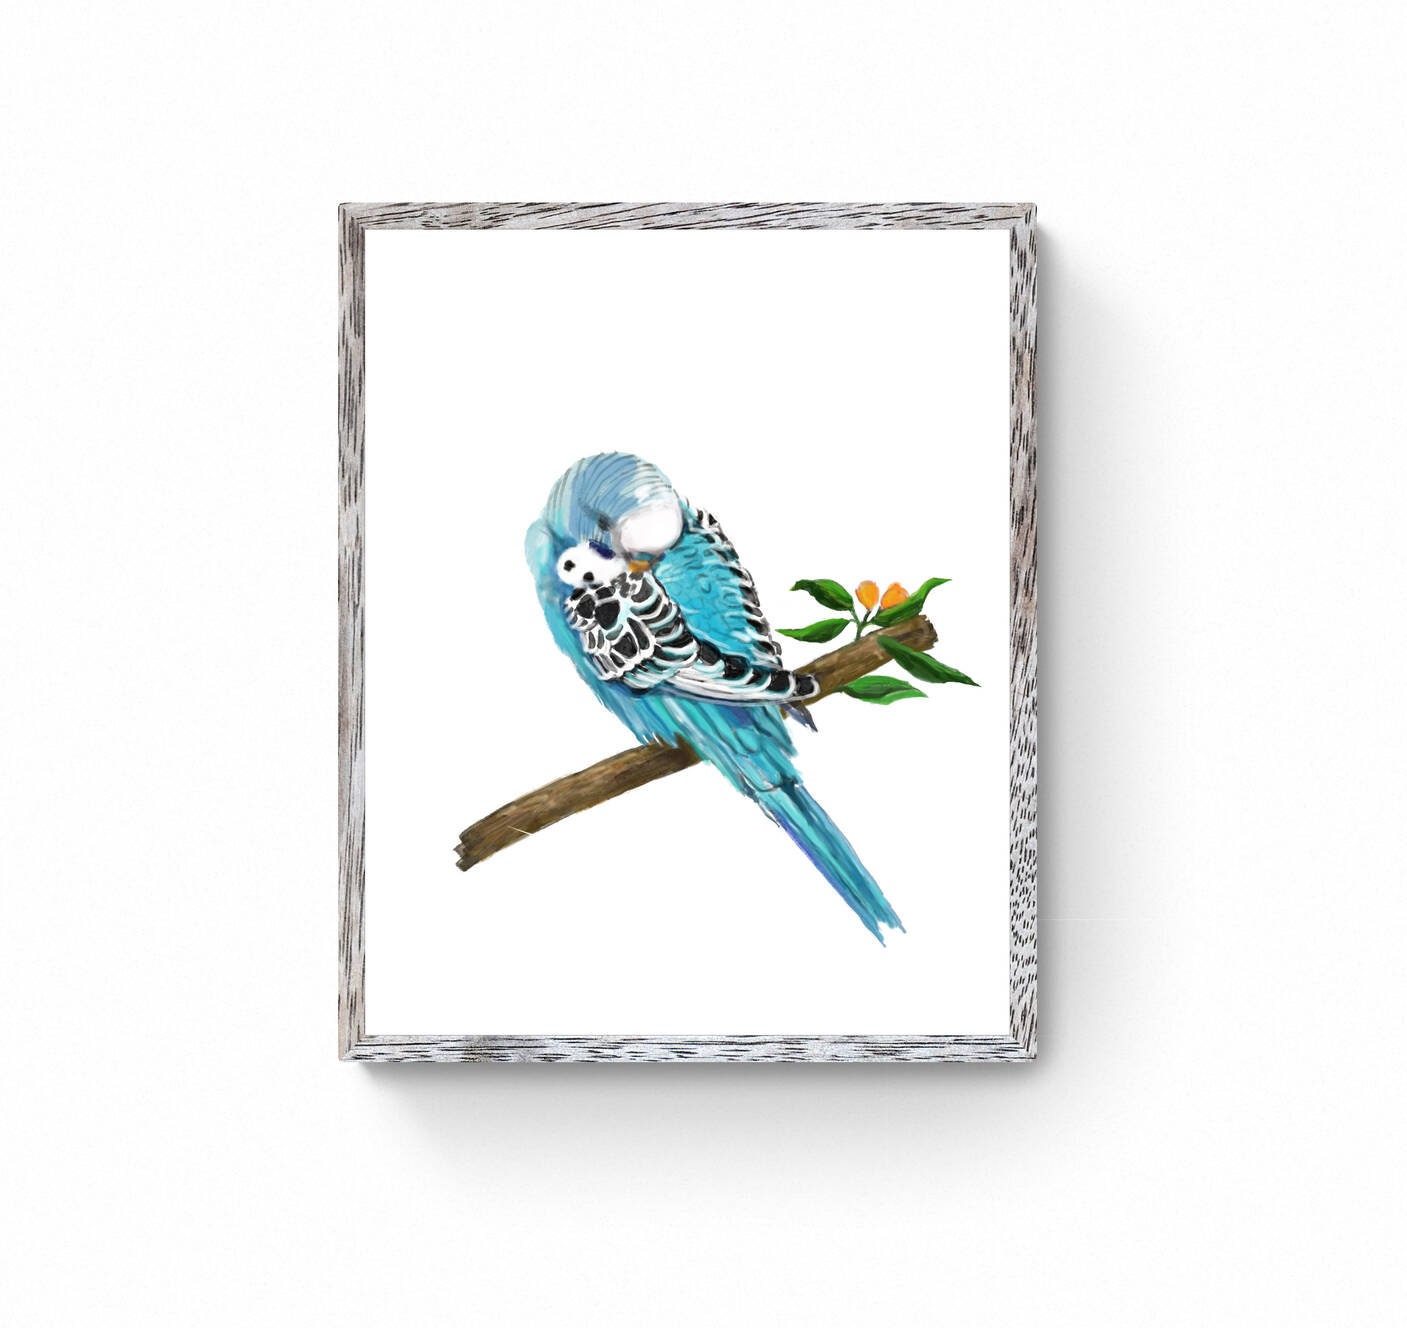 Sleeping Blue Parakeet, Blue Budgie Resting, Blue Bird Memorial, Tropical Bird Art, Bird Lover Gift, Animal Wall Artwork, Bird Illustration